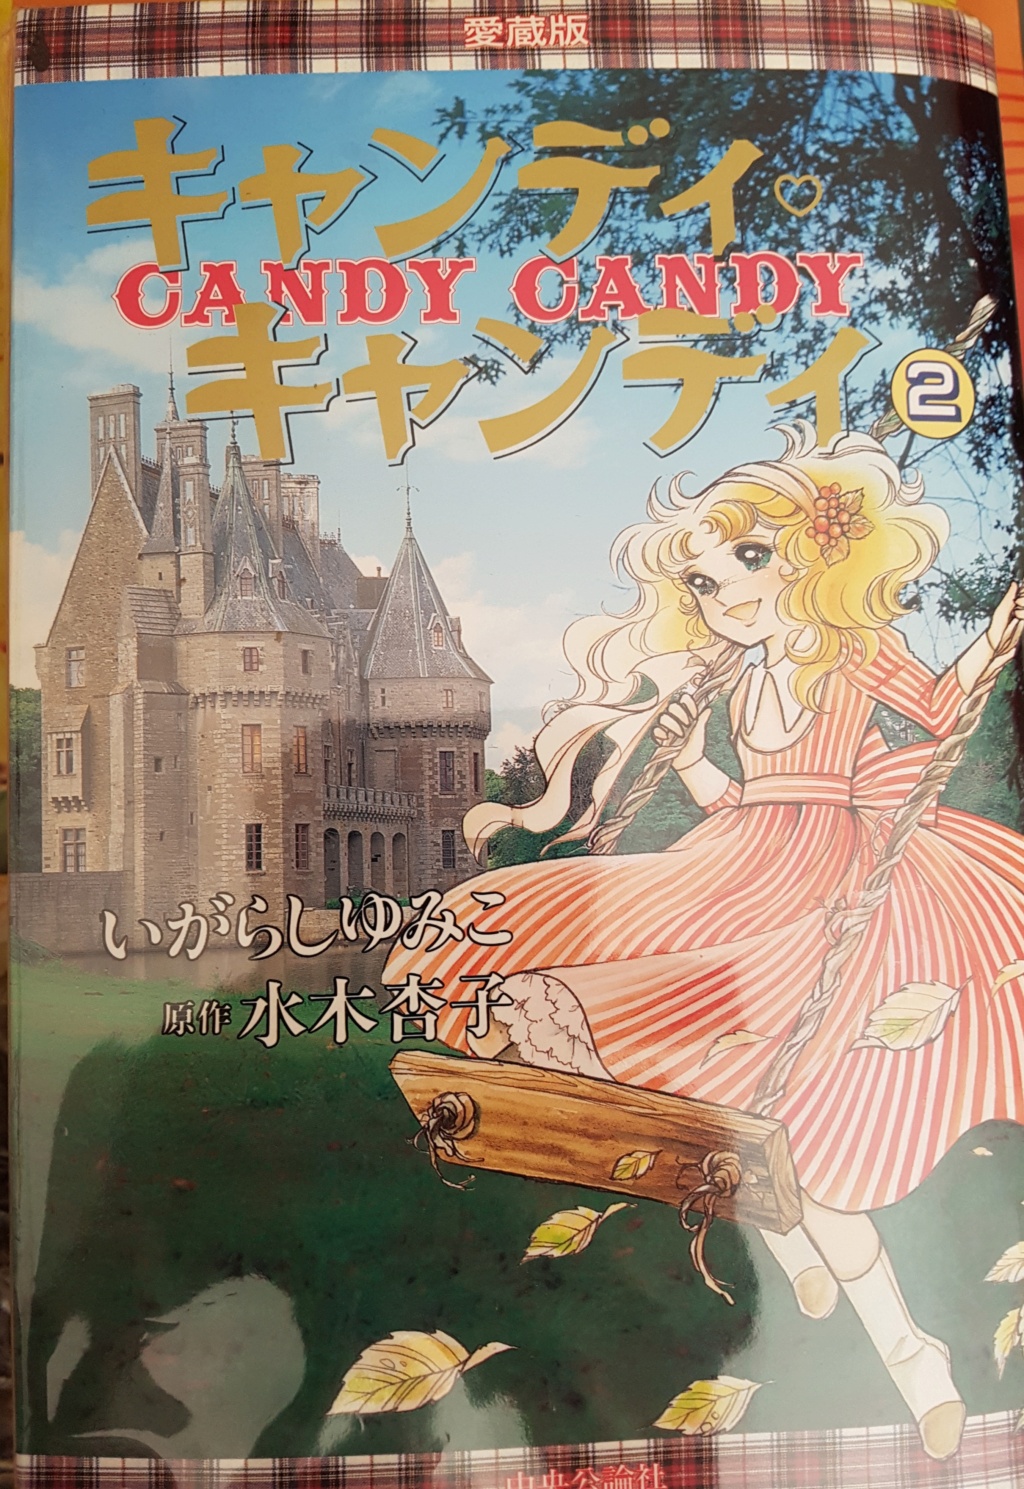 candy - Candy Candy Manga Japonais  20210524